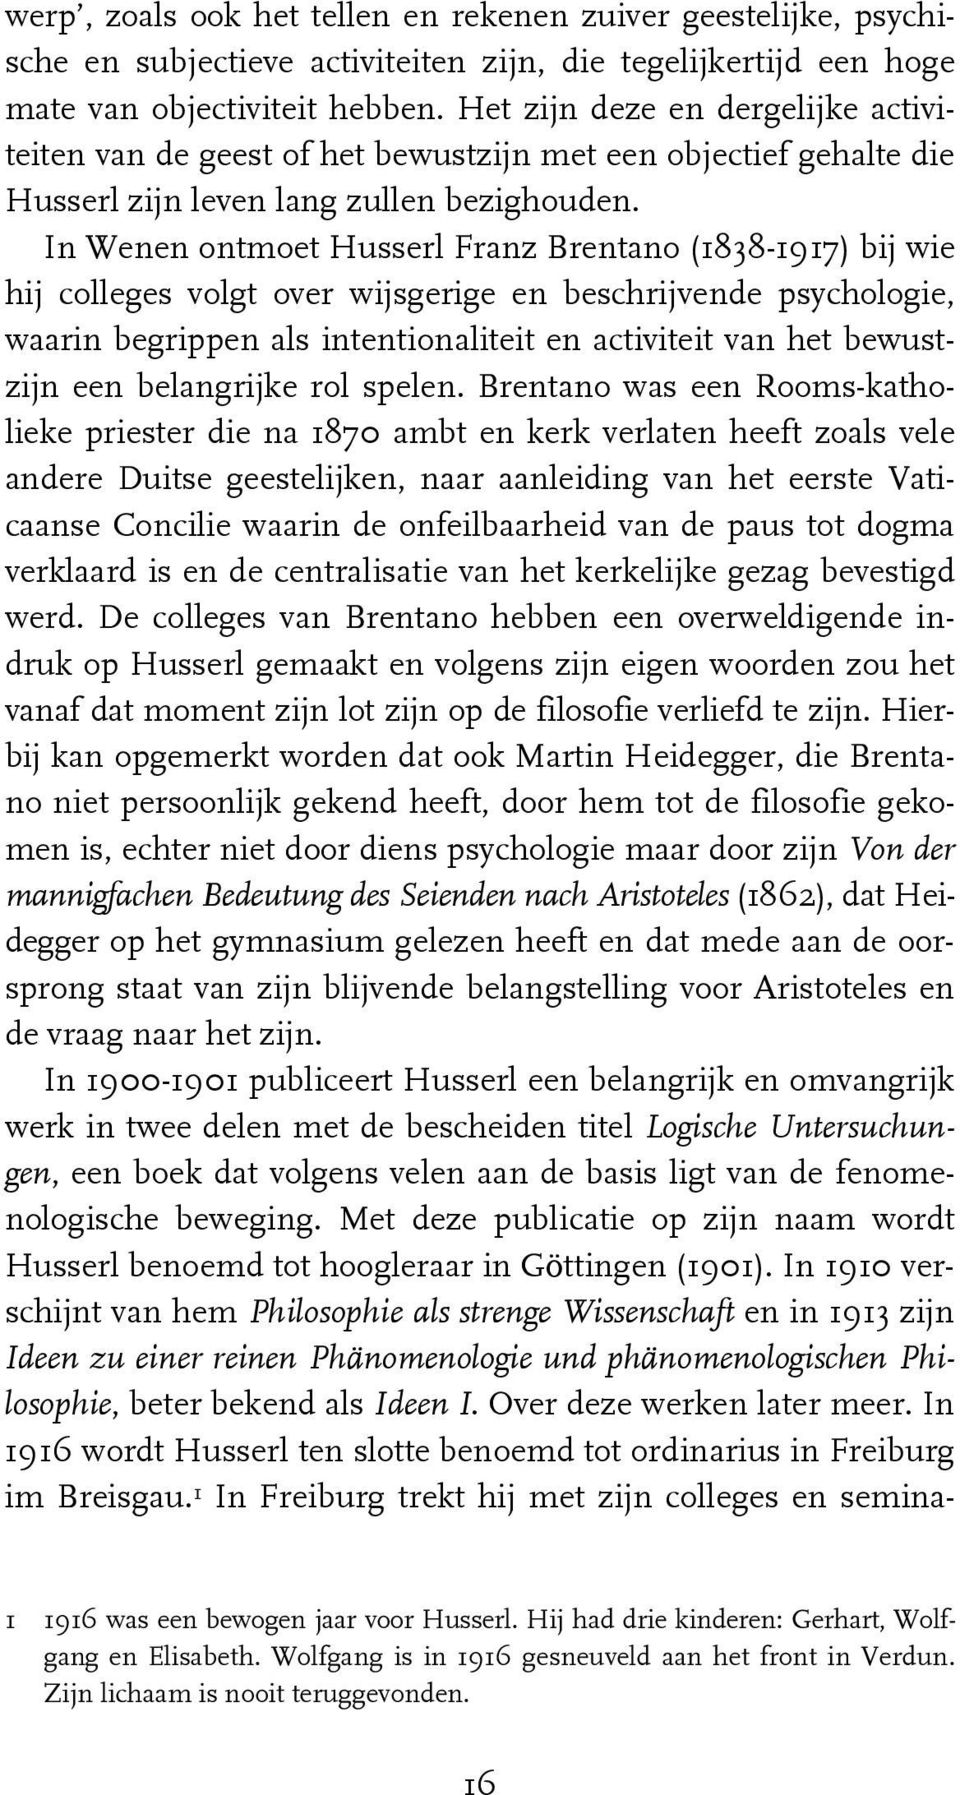 In Wenen ontmoet Husserl Franz Brentano (1838-1917) bij wie hij colleges volgt over wijsgerige en beschrijvende psychologie, waarin begrippen als intentionaliteit en activiteit van het bewustzijn een